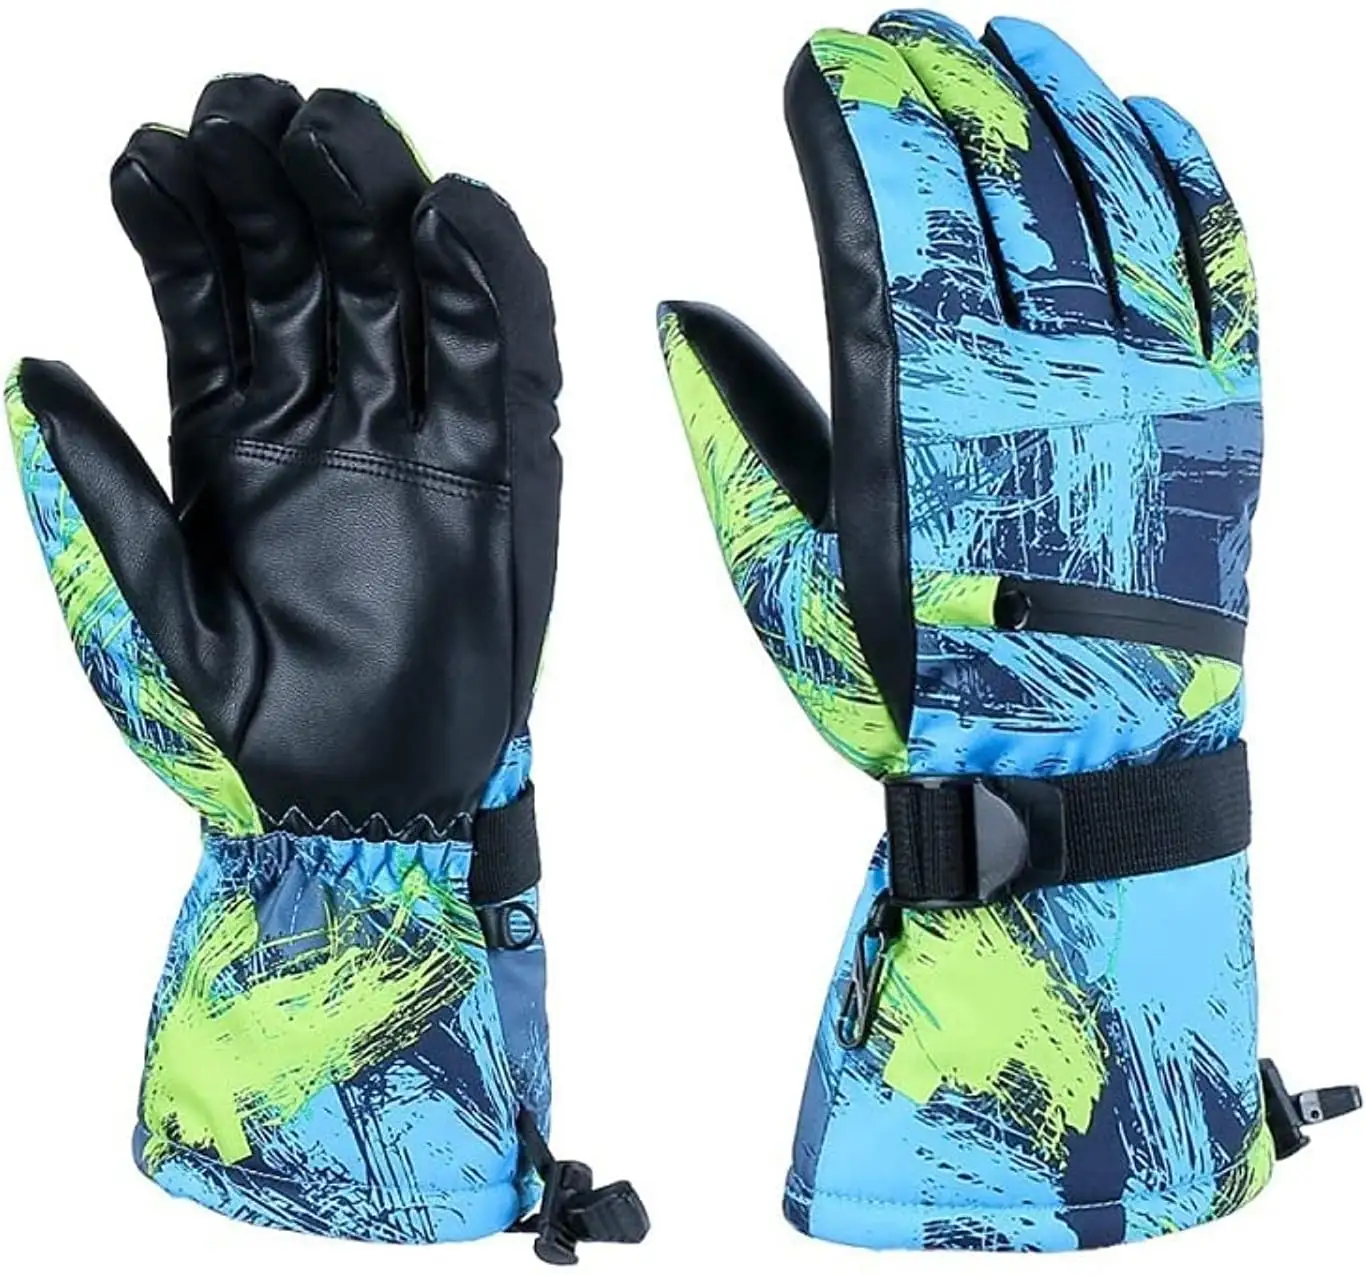 Sarung tangan Ski kulit papan salju antilembap antiair/sarung tangan Ski pria untuk cuaca dingin dengan standar internasional